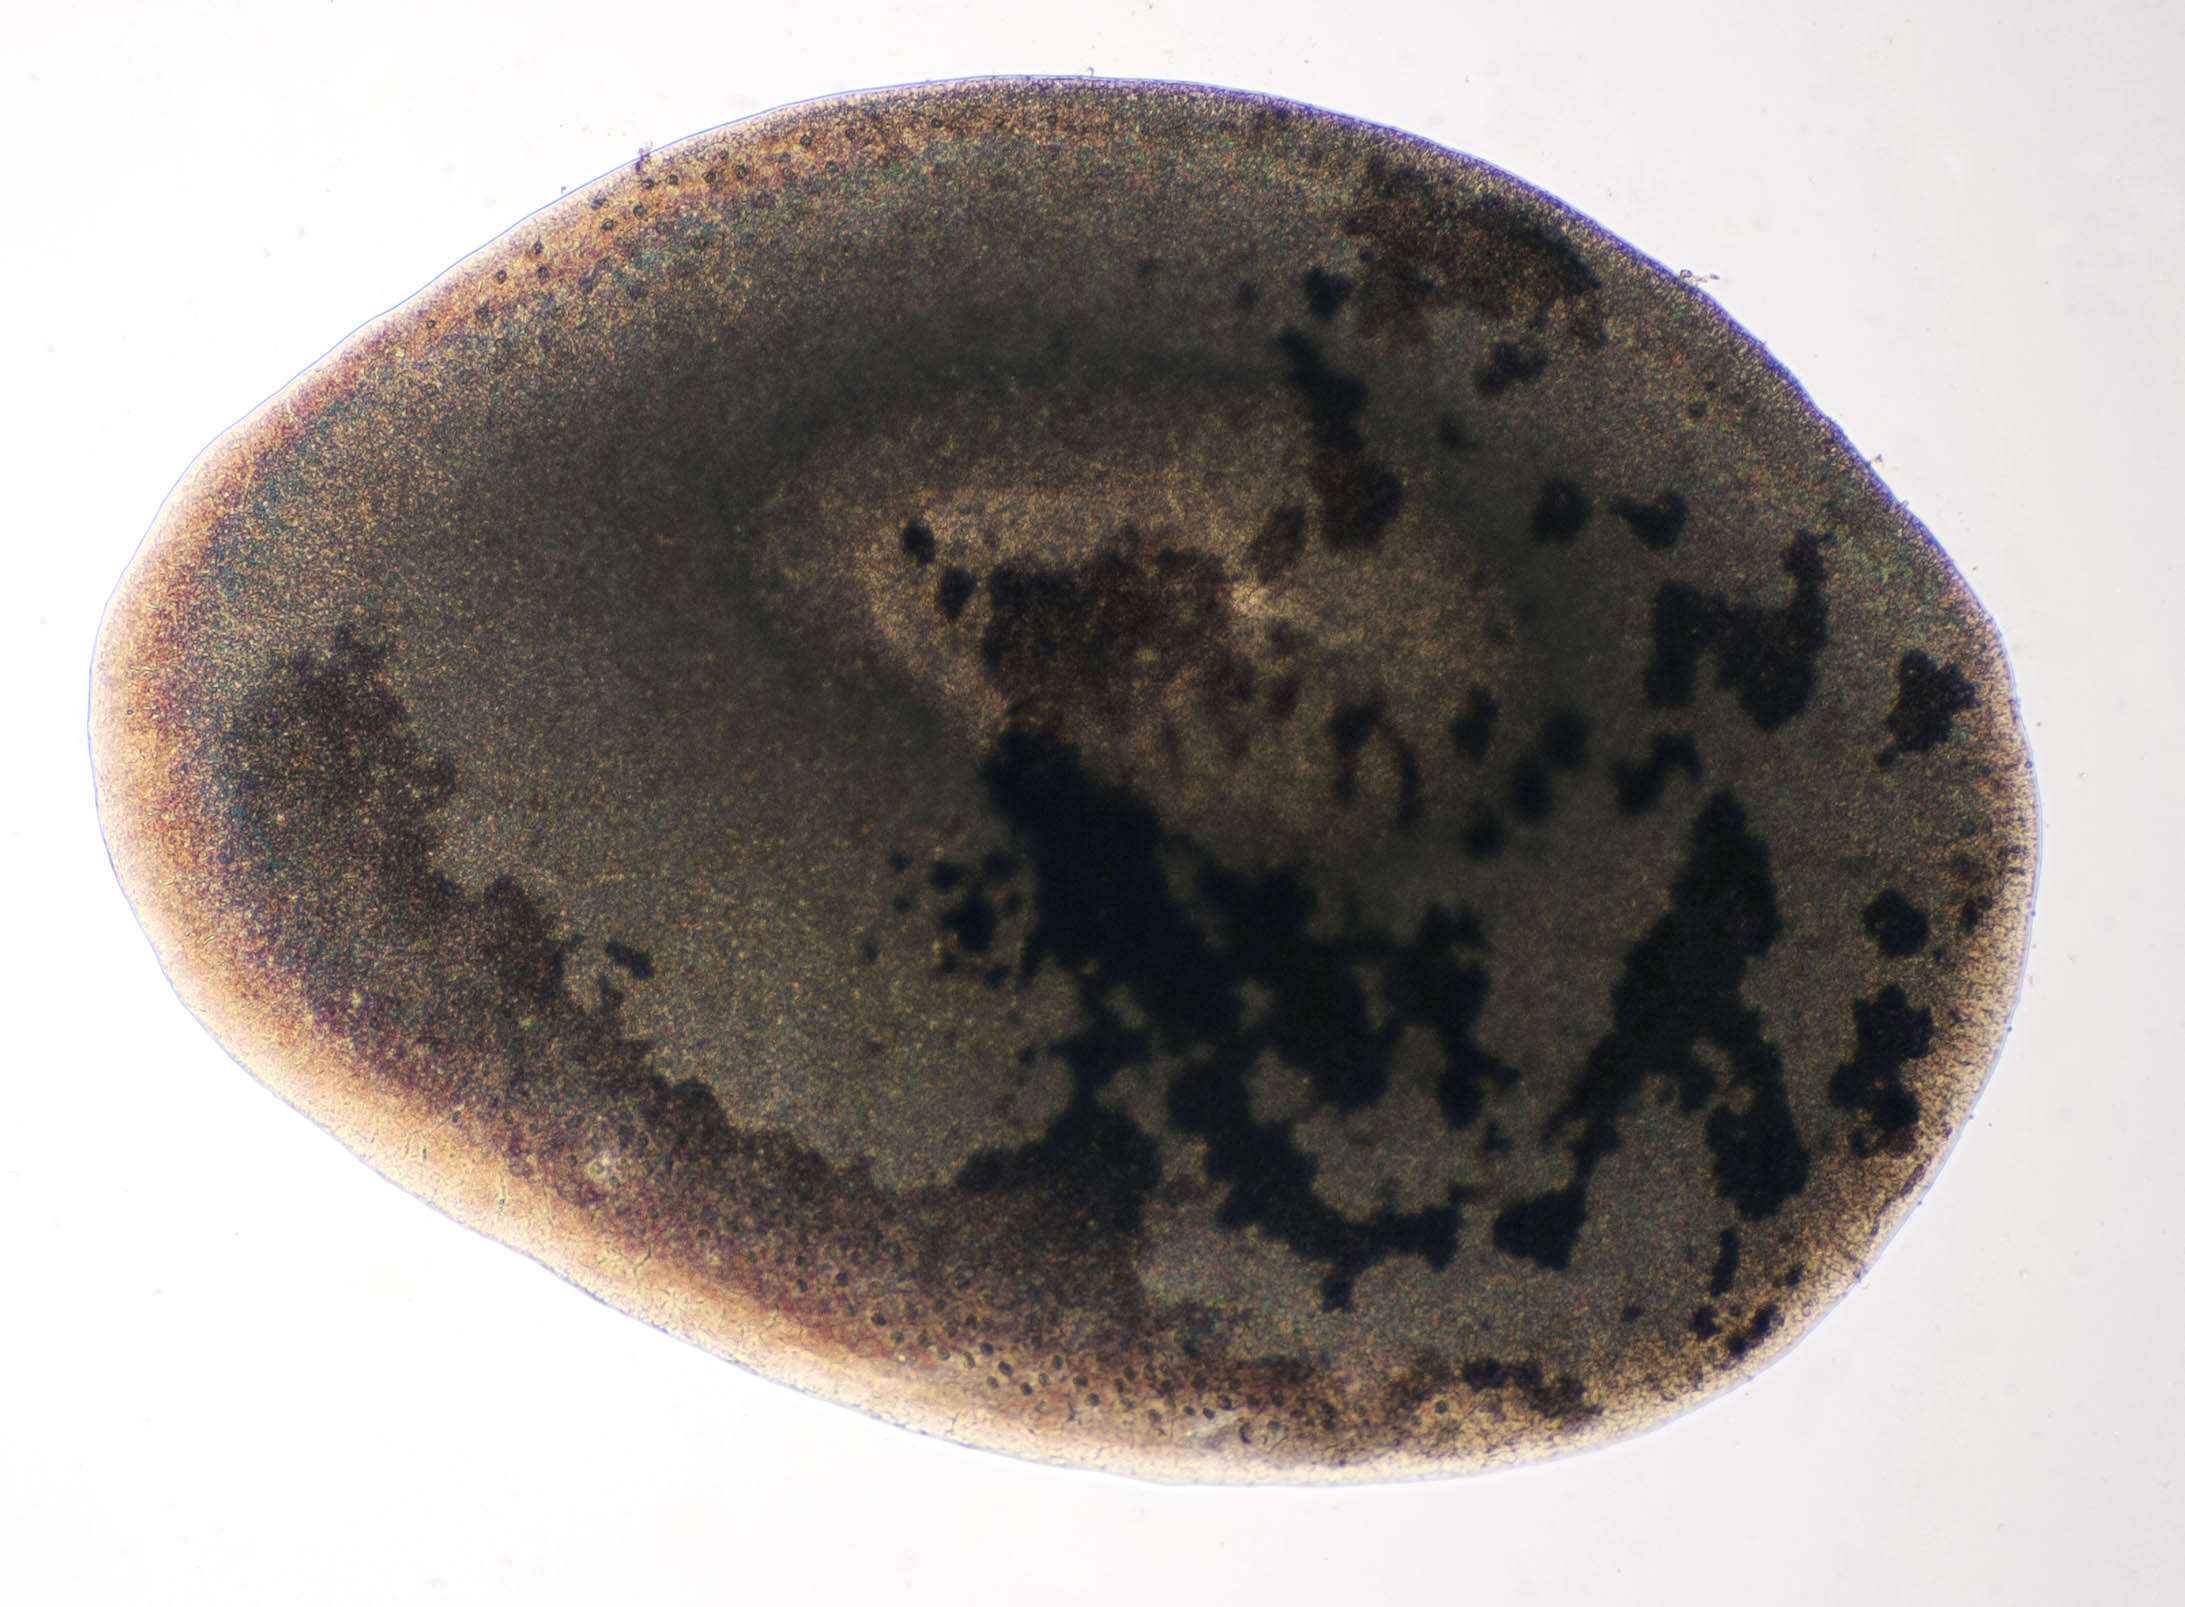 Malmgrenia lunulata (Delle Chiaje 1830) resmi